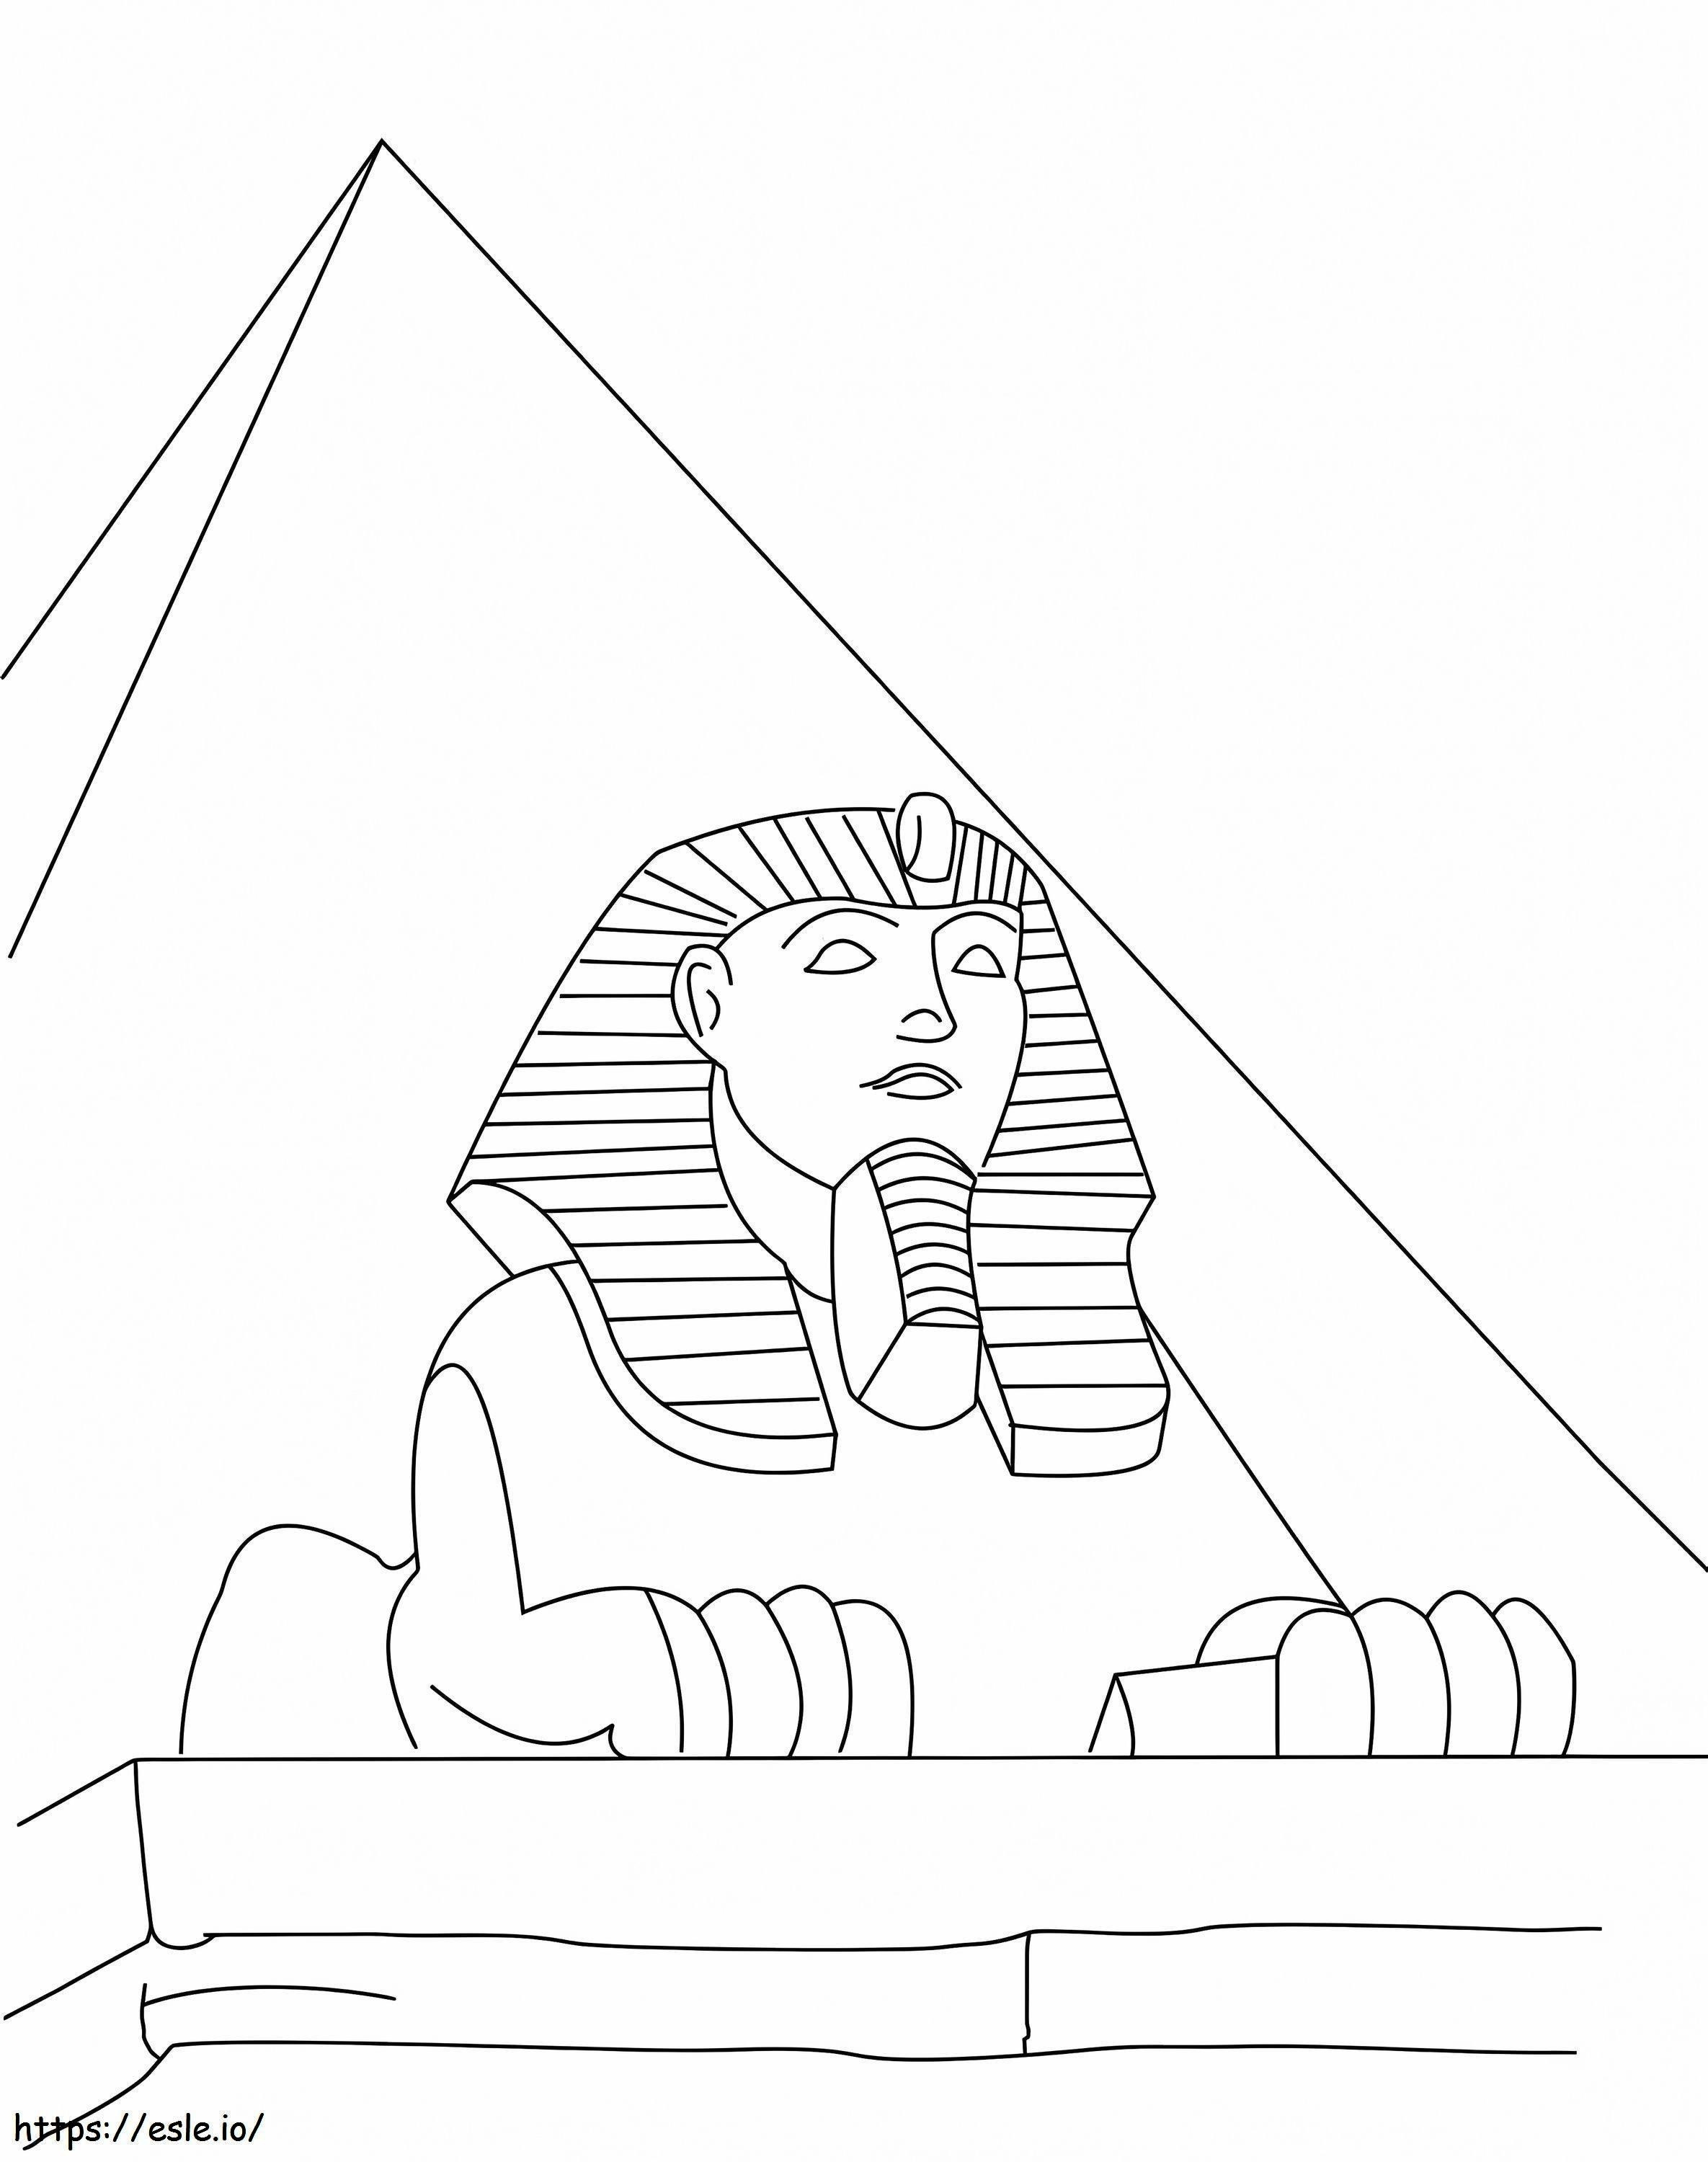 1542941189 3350 29315 Sphinks Egypte kleurplaat kleurplaat